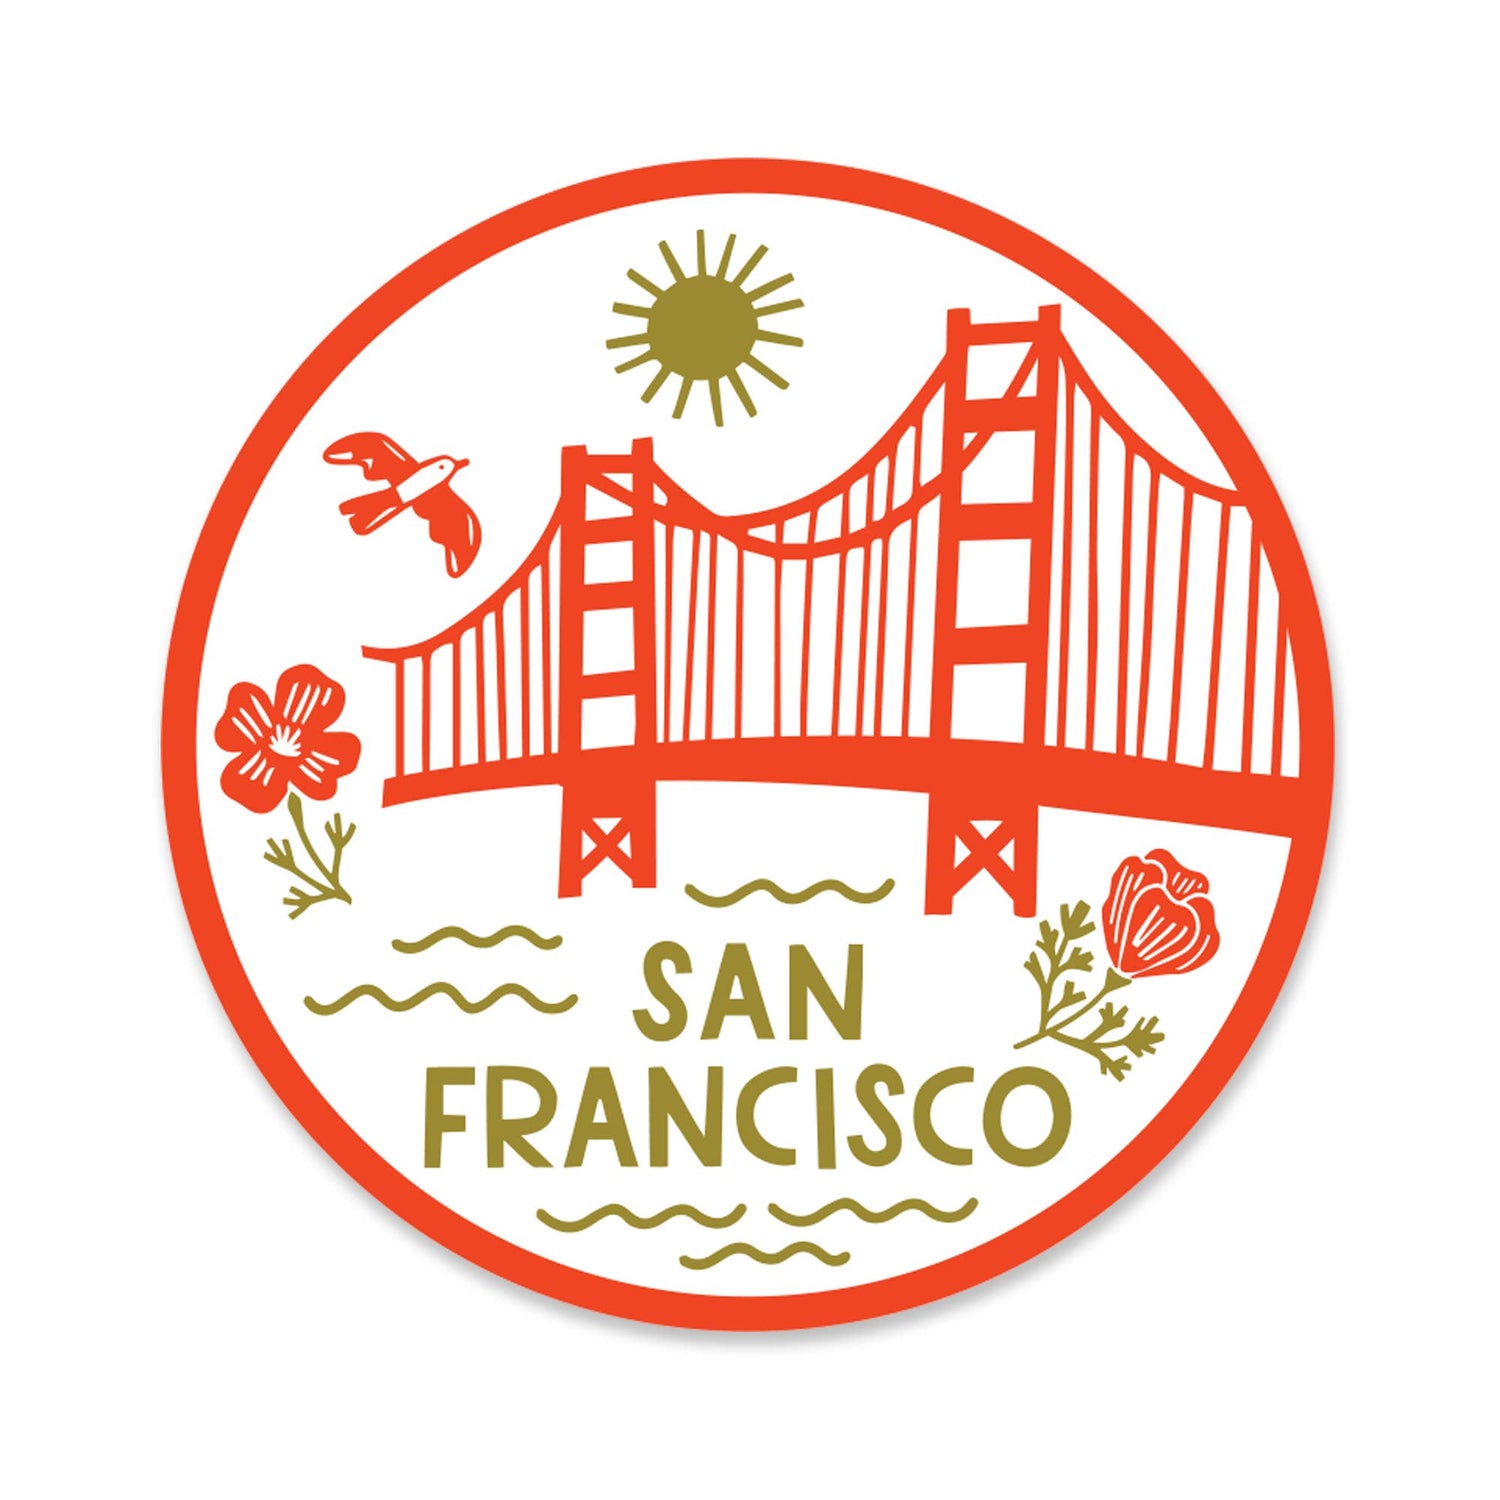 Round San Francisco sticker with Golden Gate Bridge